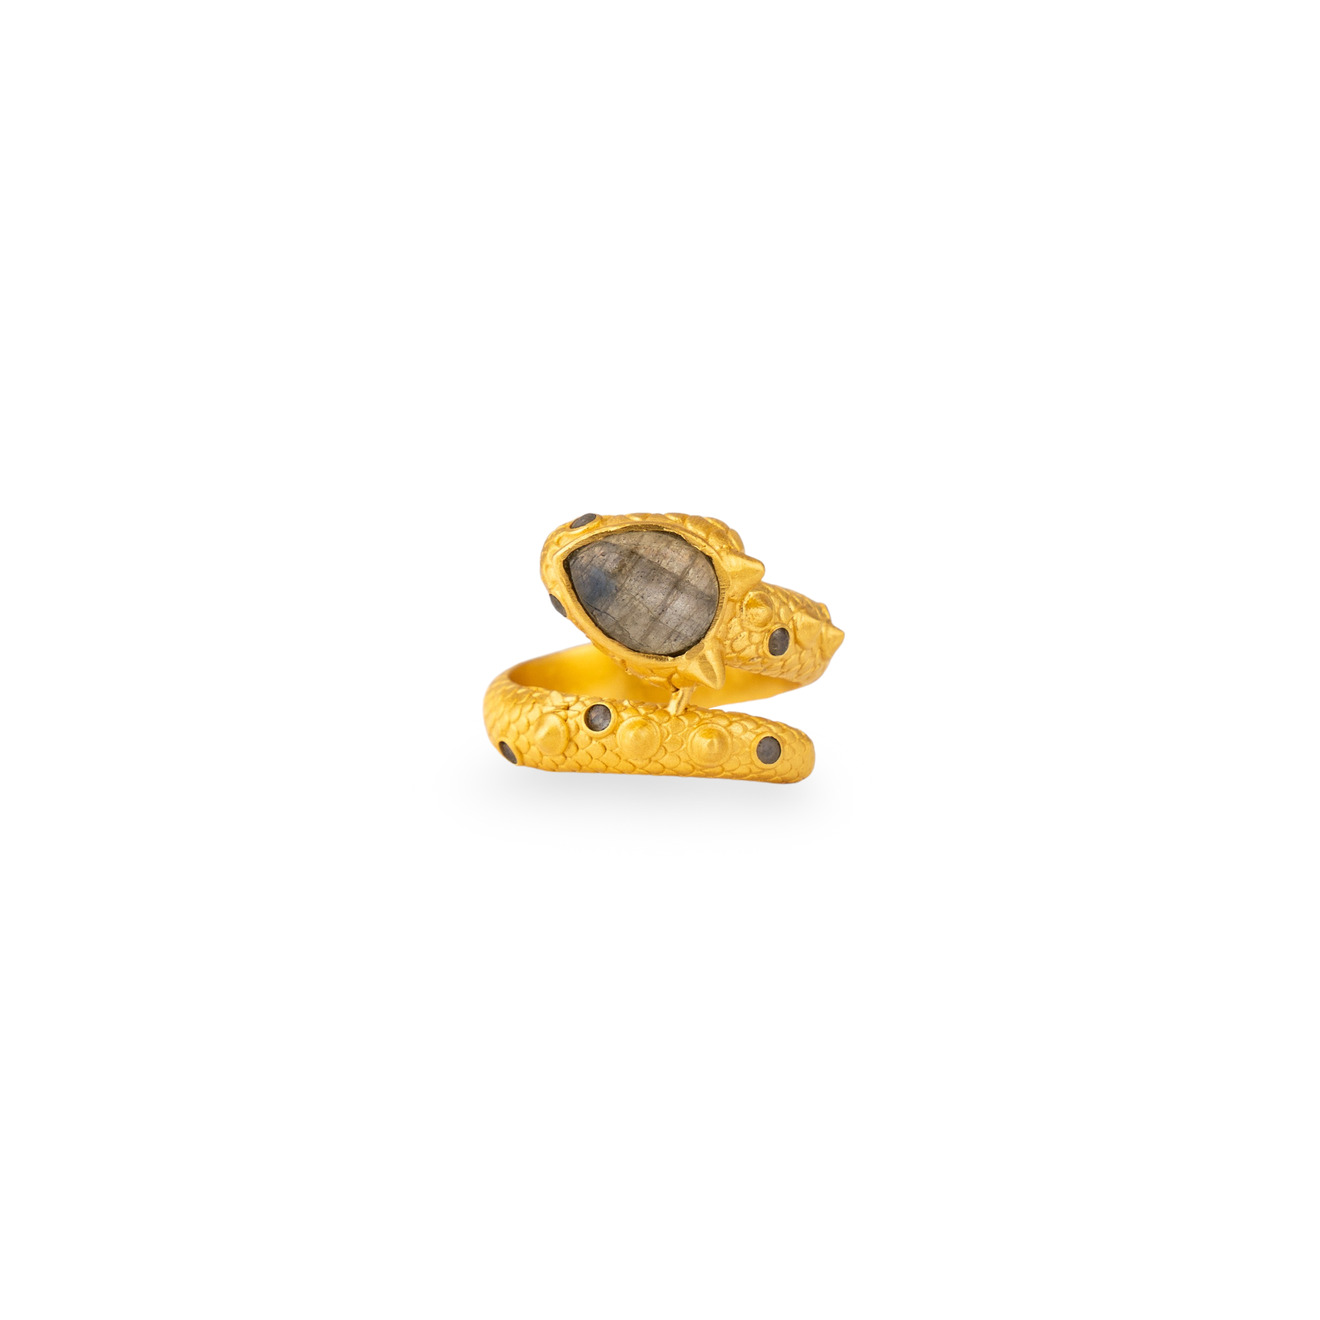 Boheme Покрытое золотом кольцо DRAGON XANADU SHORT с лабрадором boheme покрытое золотом колье versailles с синим ониксом и цитрином